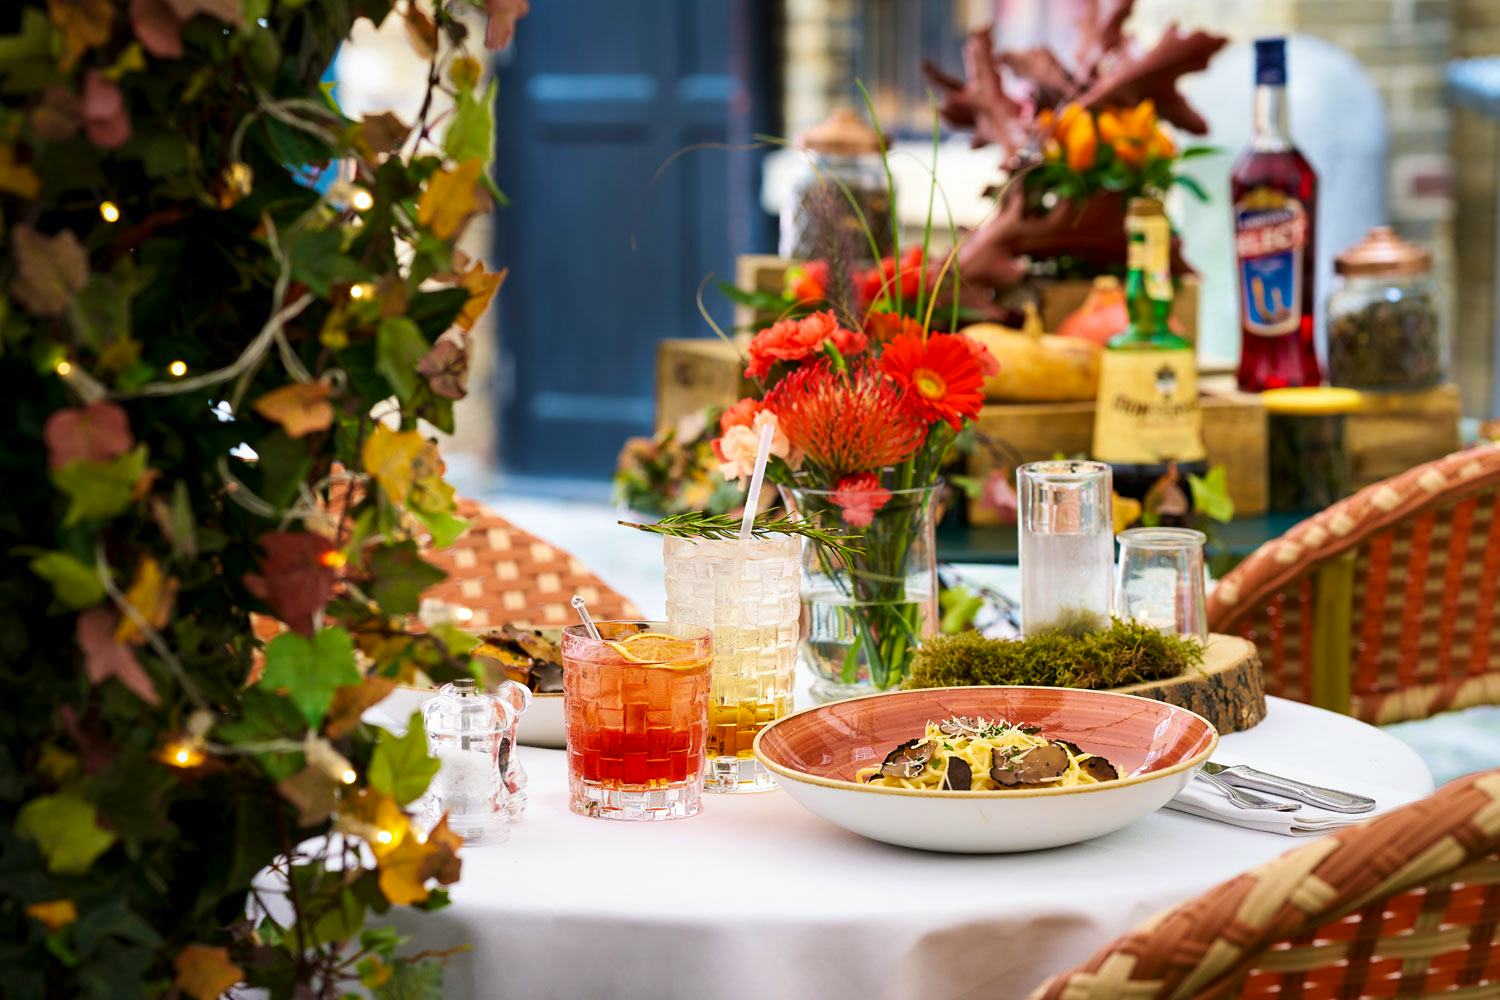 London restaurants bars autumn menus seasonal dishes